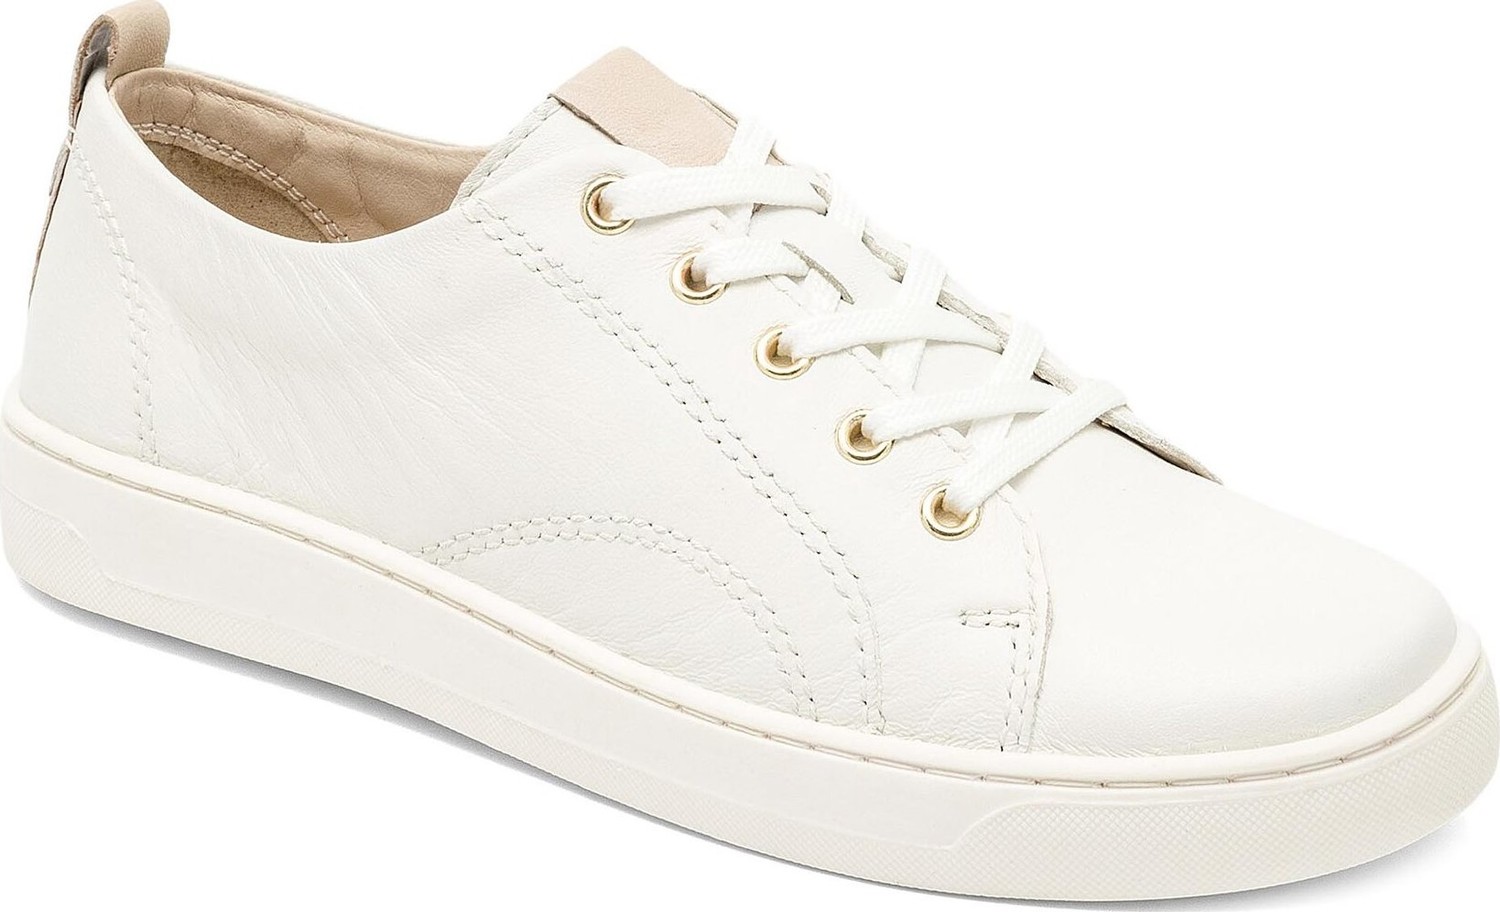 Sneakersy Lasocki WI16-D557-01 White